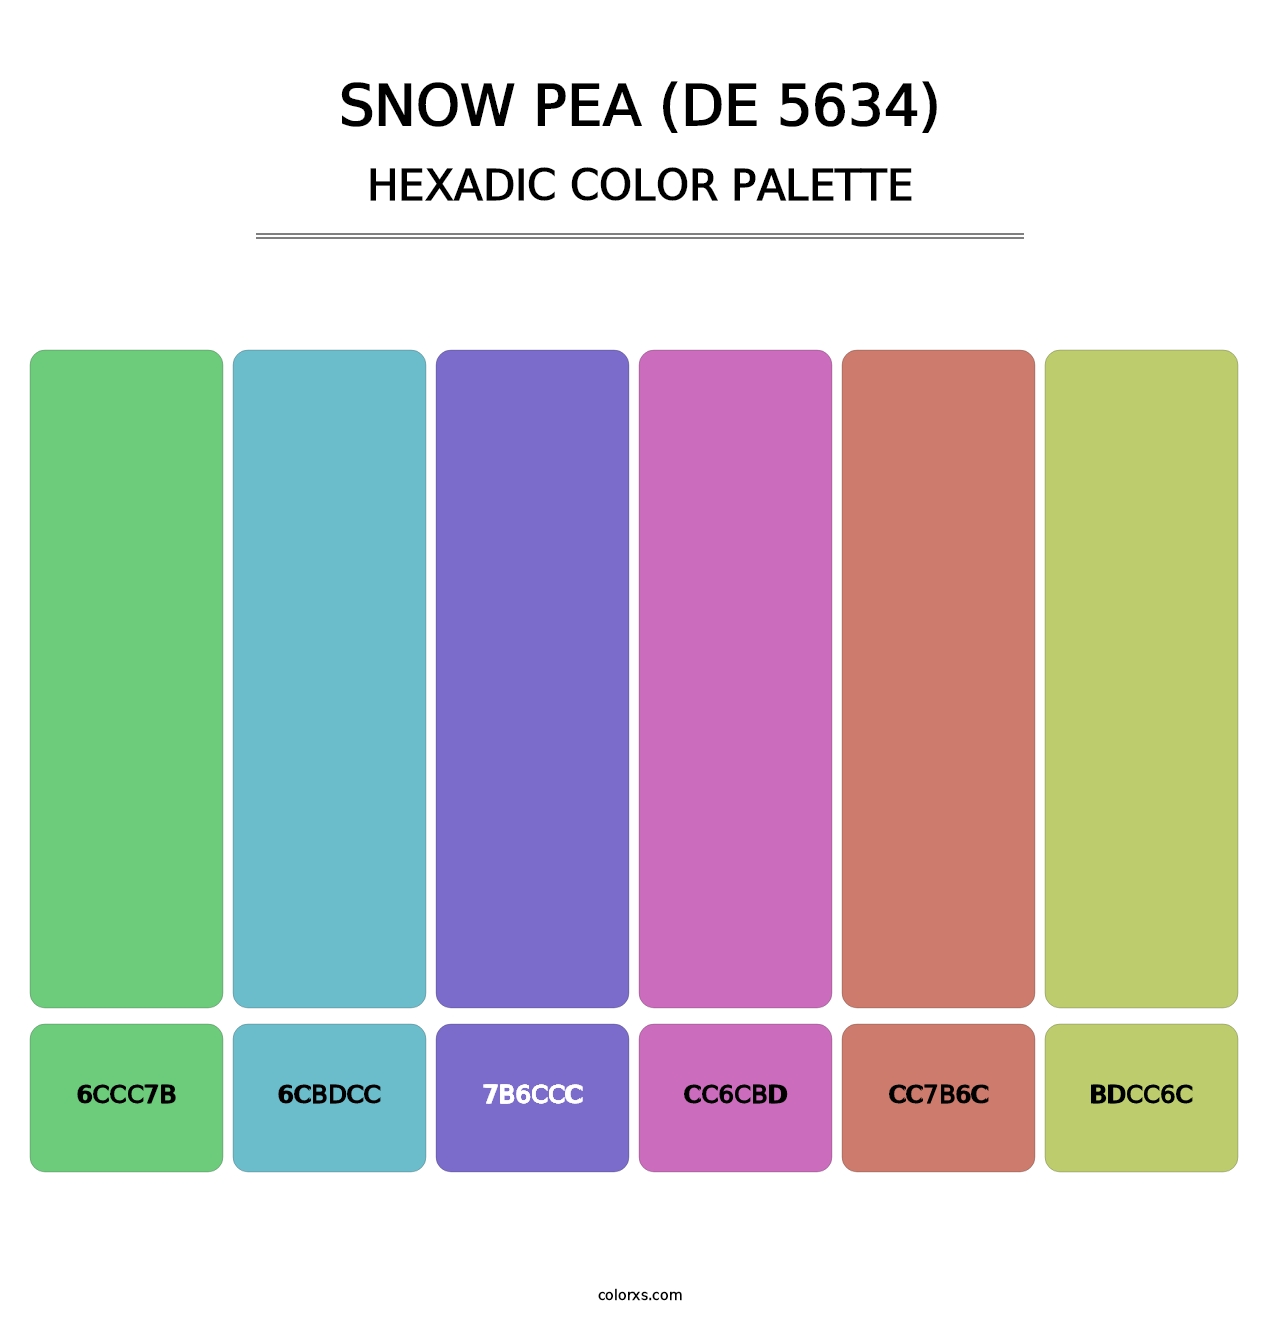 Snow Pea (DE 5634) - Hexadic Color Palette